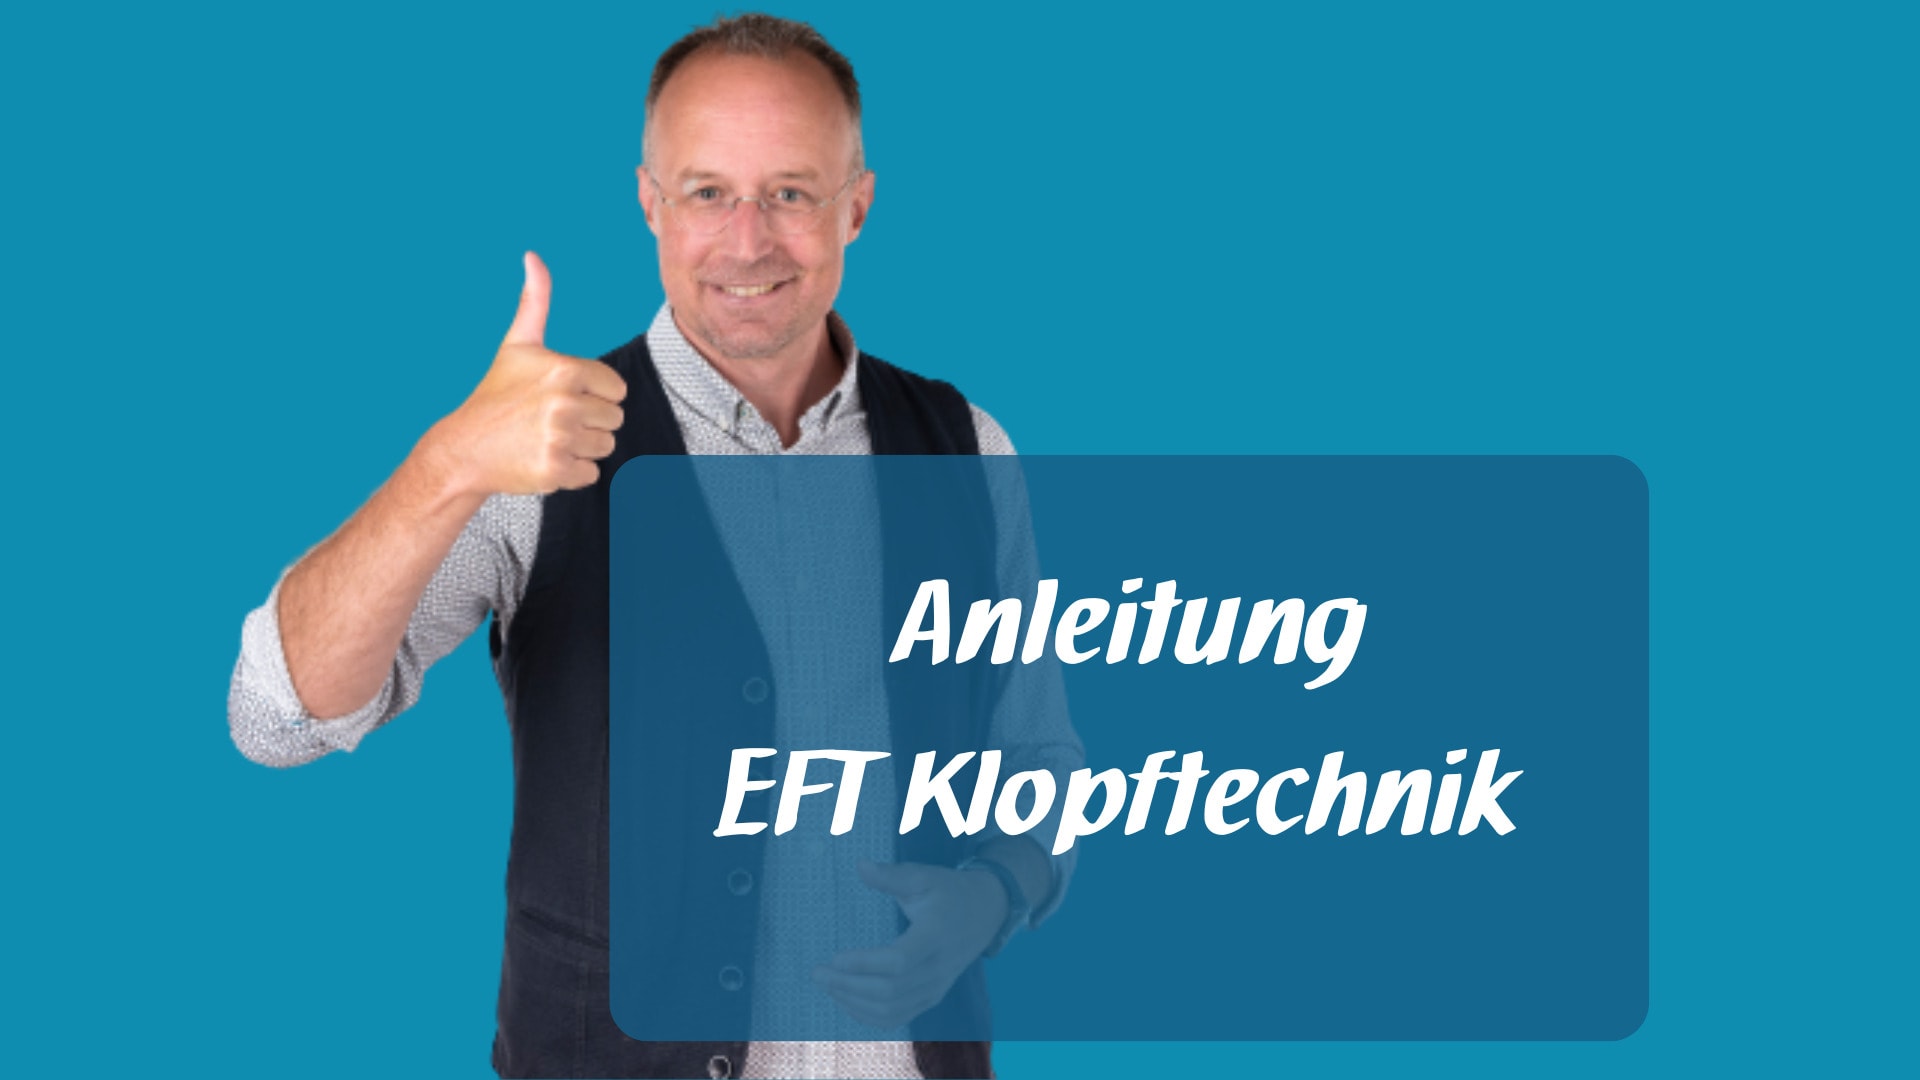 Anleitung EFT Klopftechnik